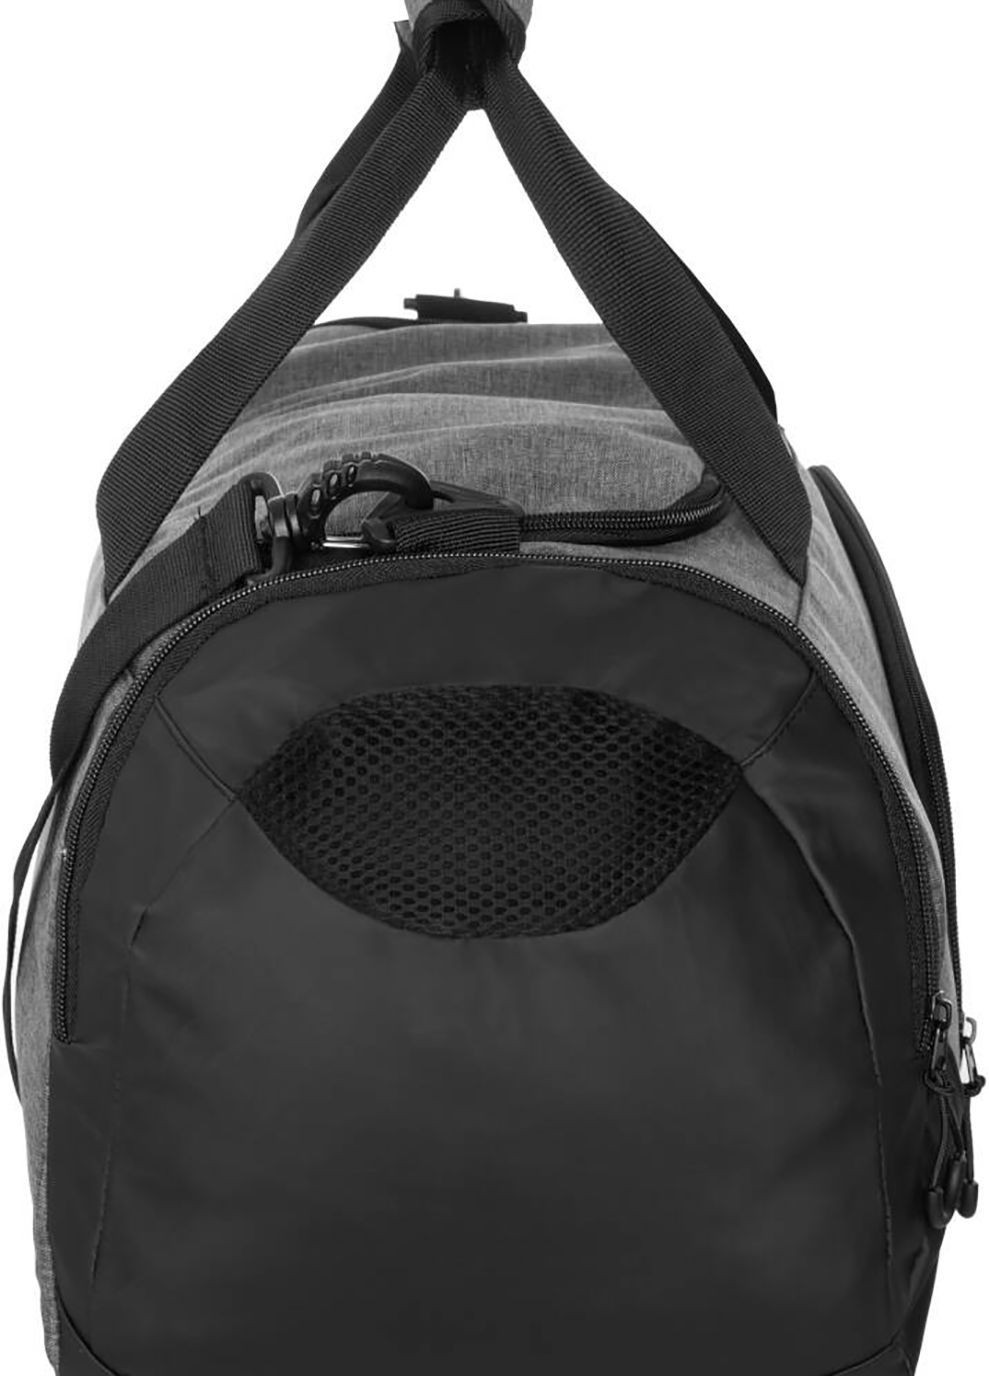 Cумка Duffel bag M 60146 Серый, Черный 48x25x29см Aqua Speed (282316171)